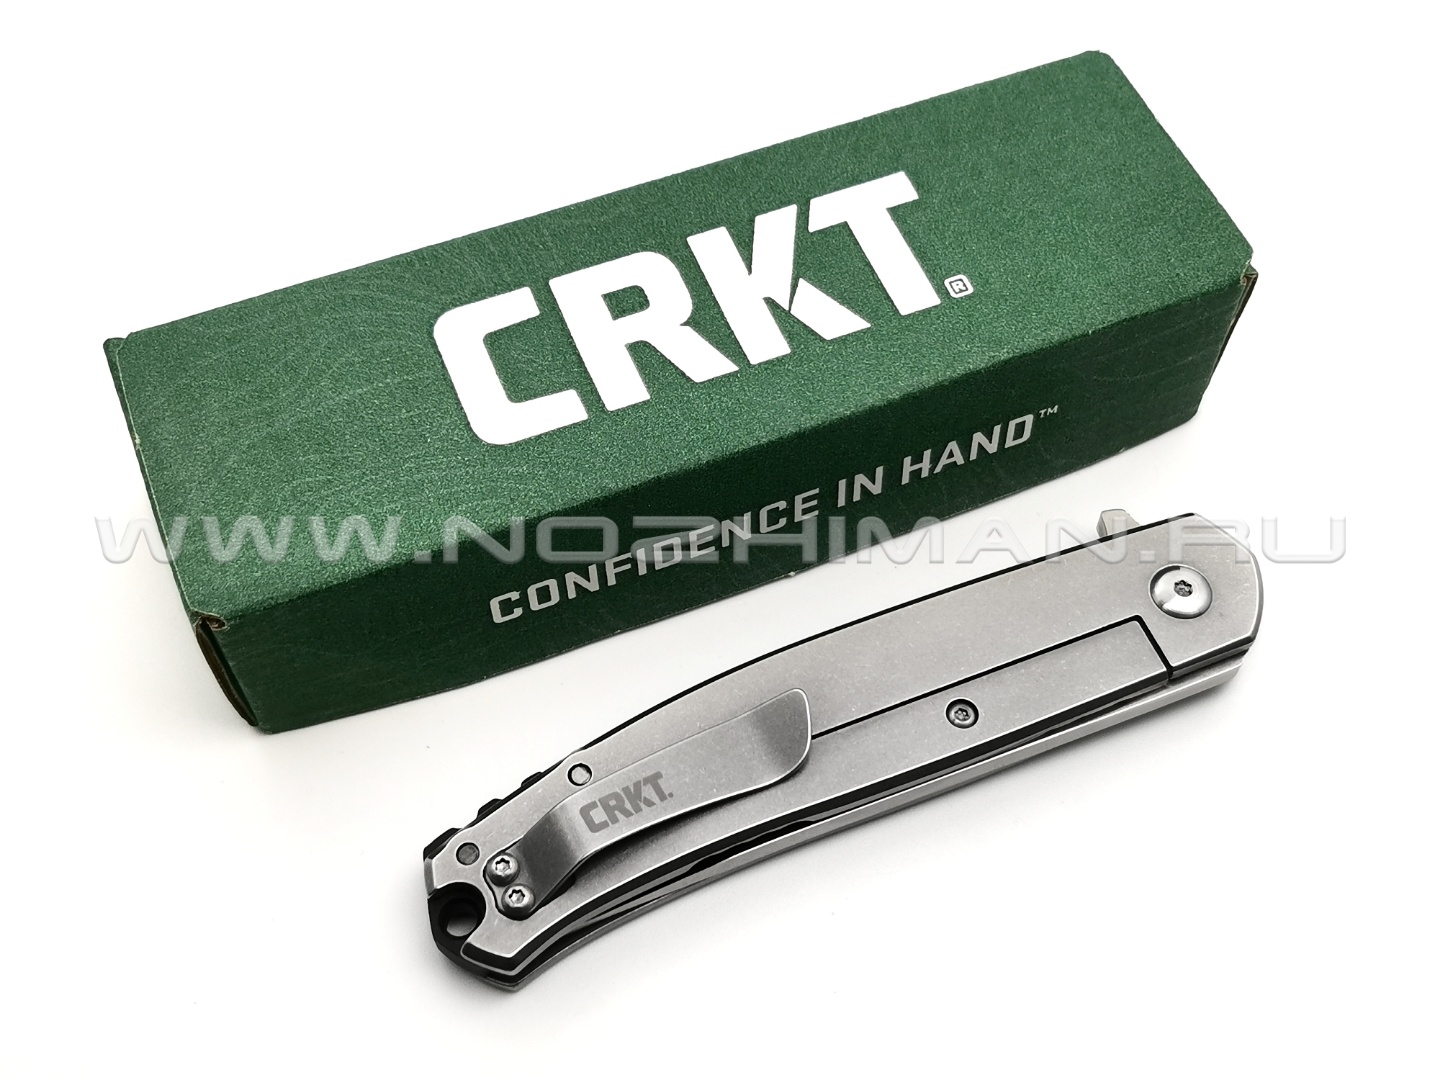 Нож CRKT Vizzle 5320 сталь 8Cr13MoV рукоять Stainless steel